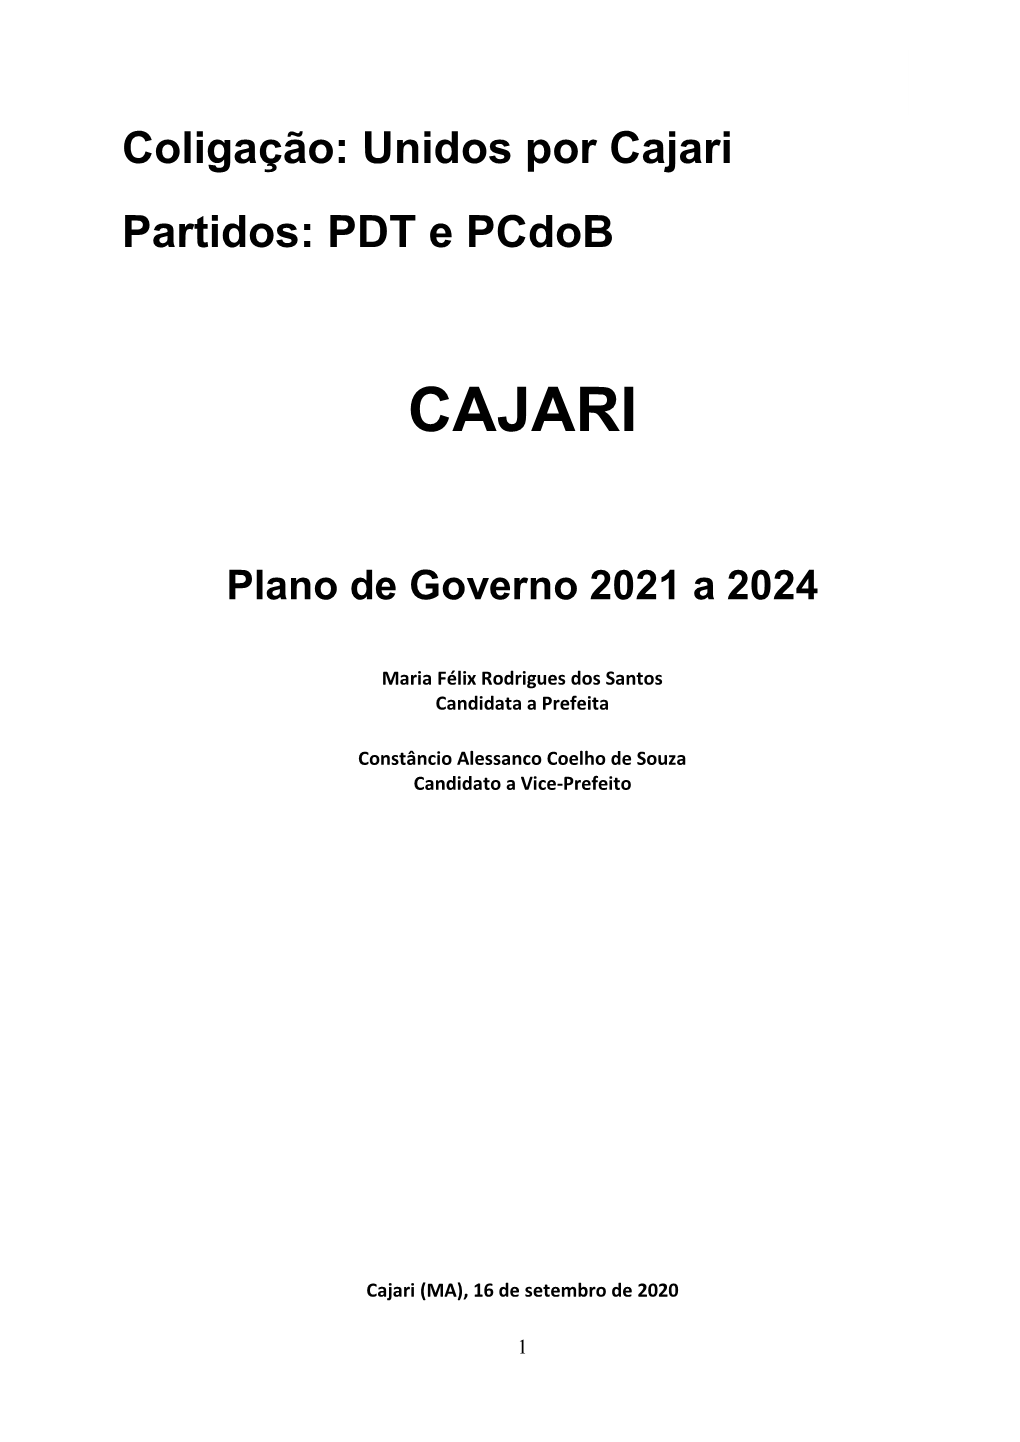 Cajari Partidos: PDT E Pcdob